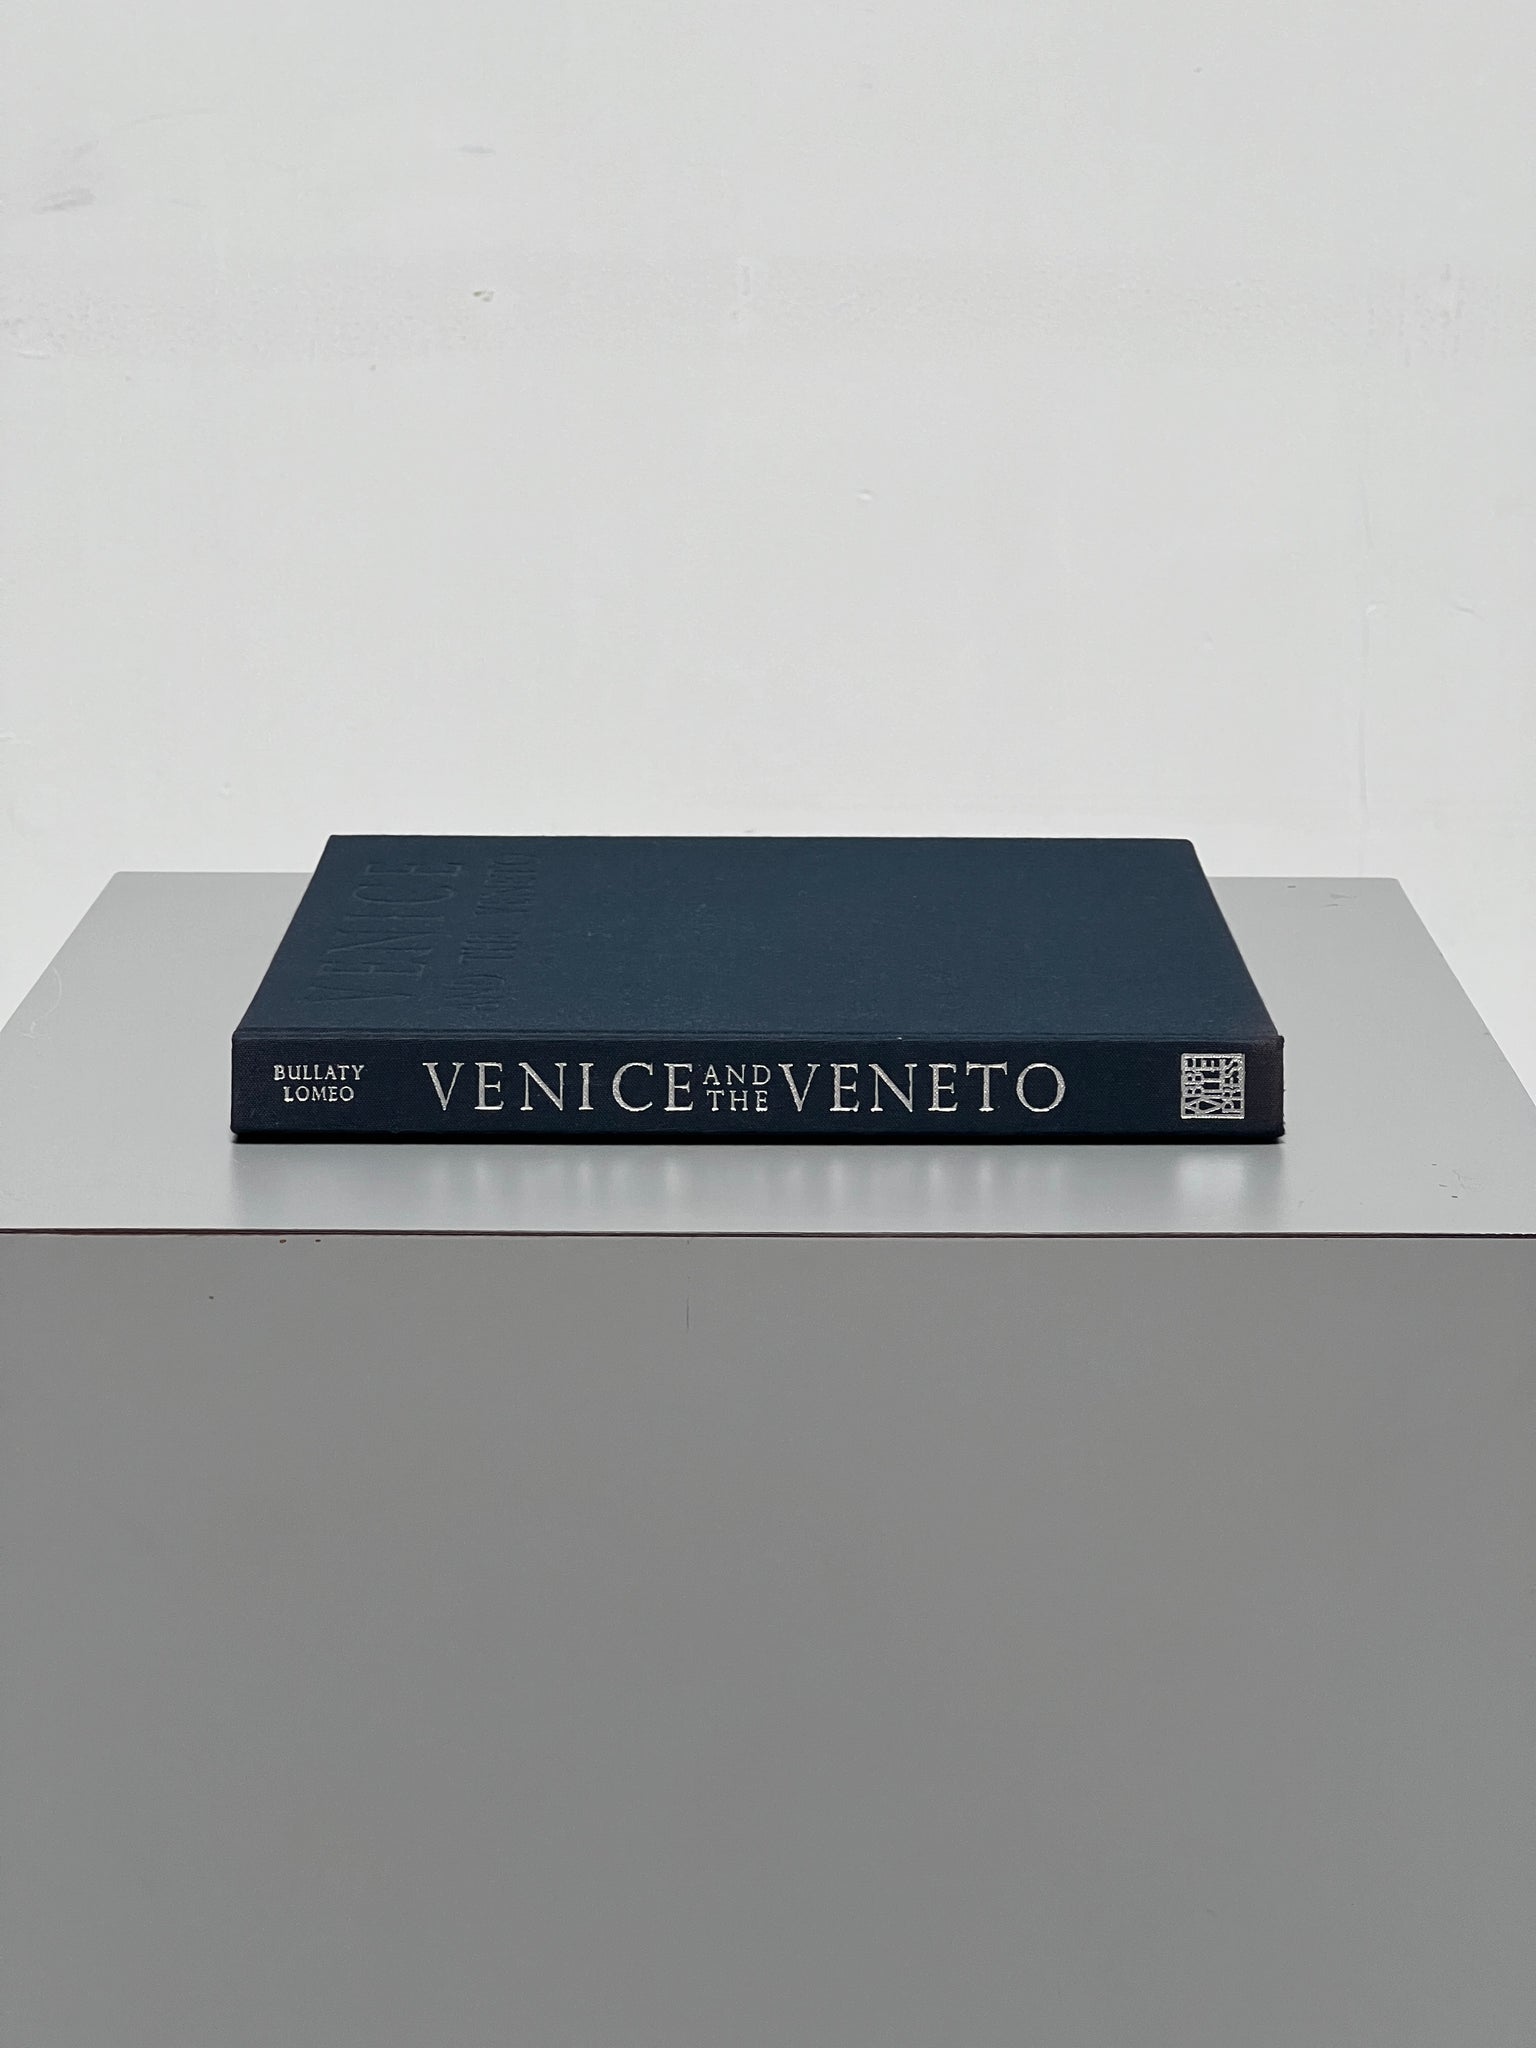 Venice and the Veneto, 1998